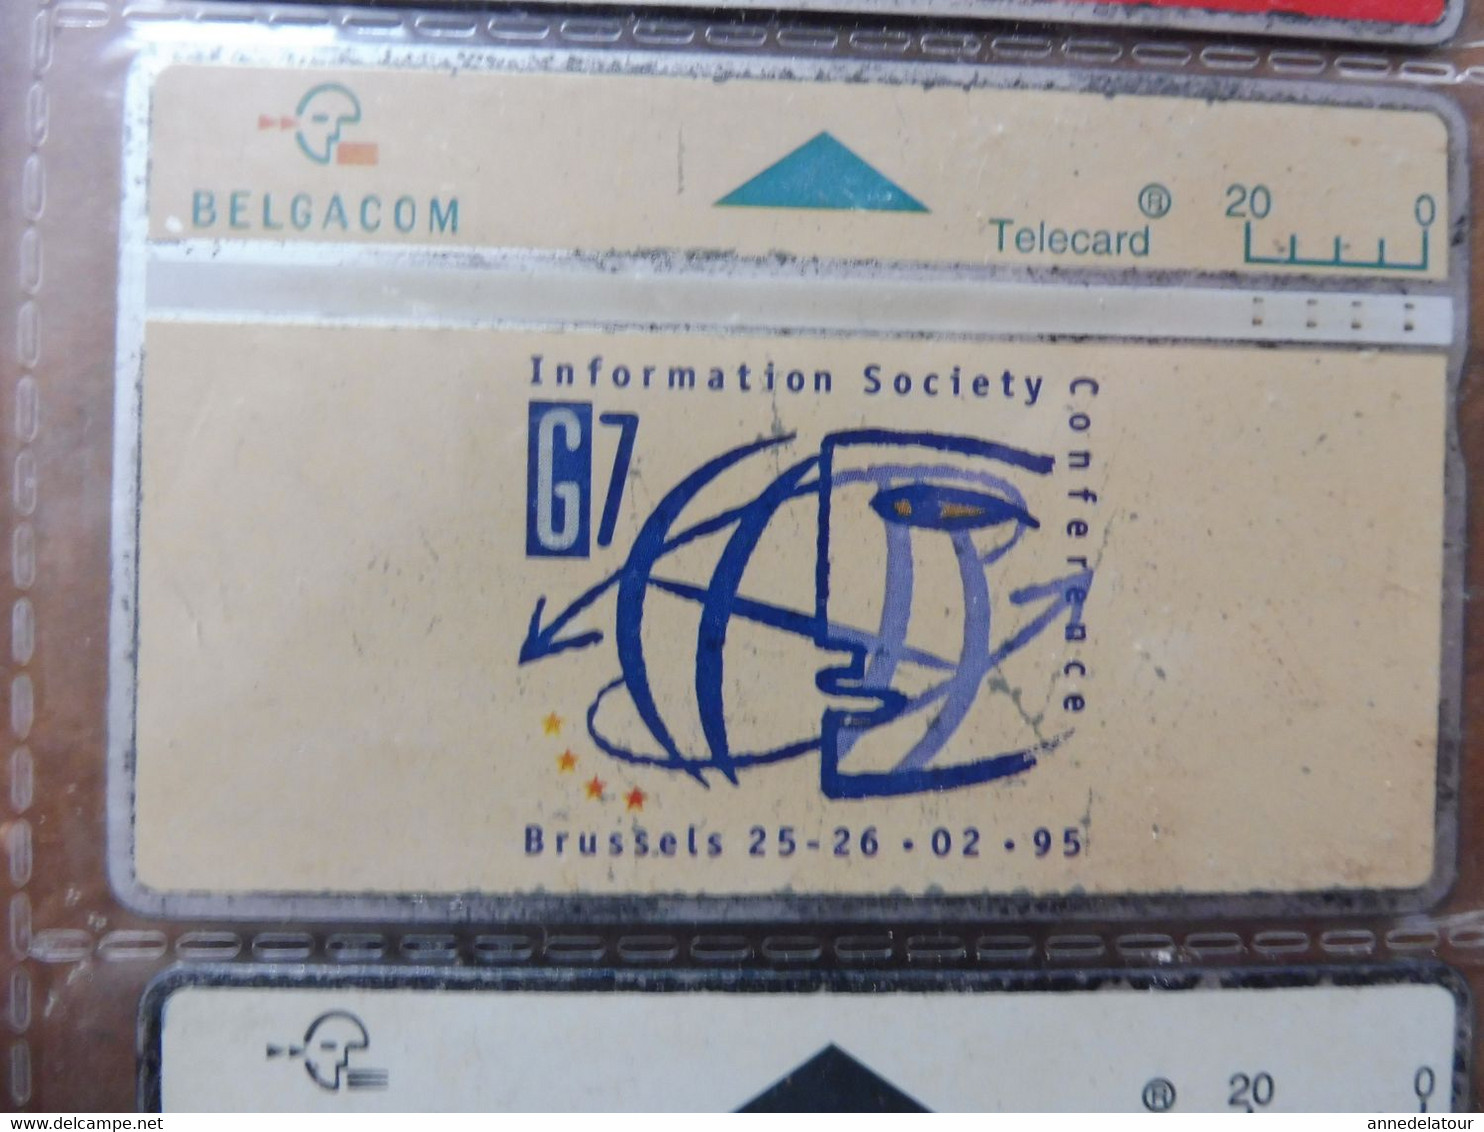 10 télécartes (cartes téléphoniques)  BELGACOM (publicité ,dessin animé, Rossini, Grotte de Han, Expo, etc )  Belgique